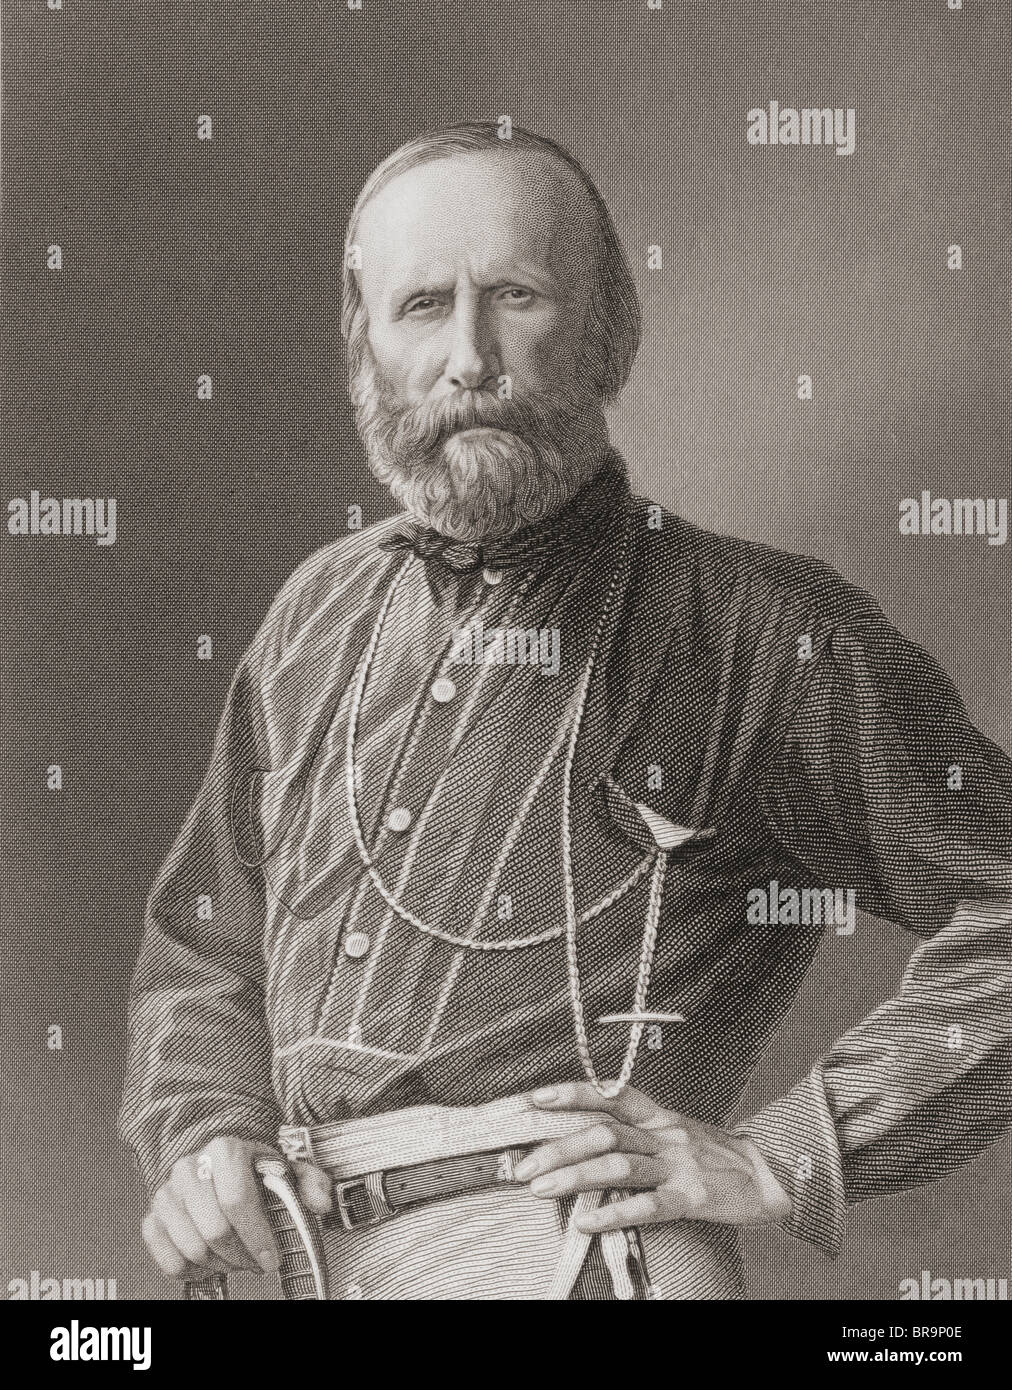 Giuseppe Garibaldi, 1807-1882. Italienische militärische und politische Abbildung. Stockfoto